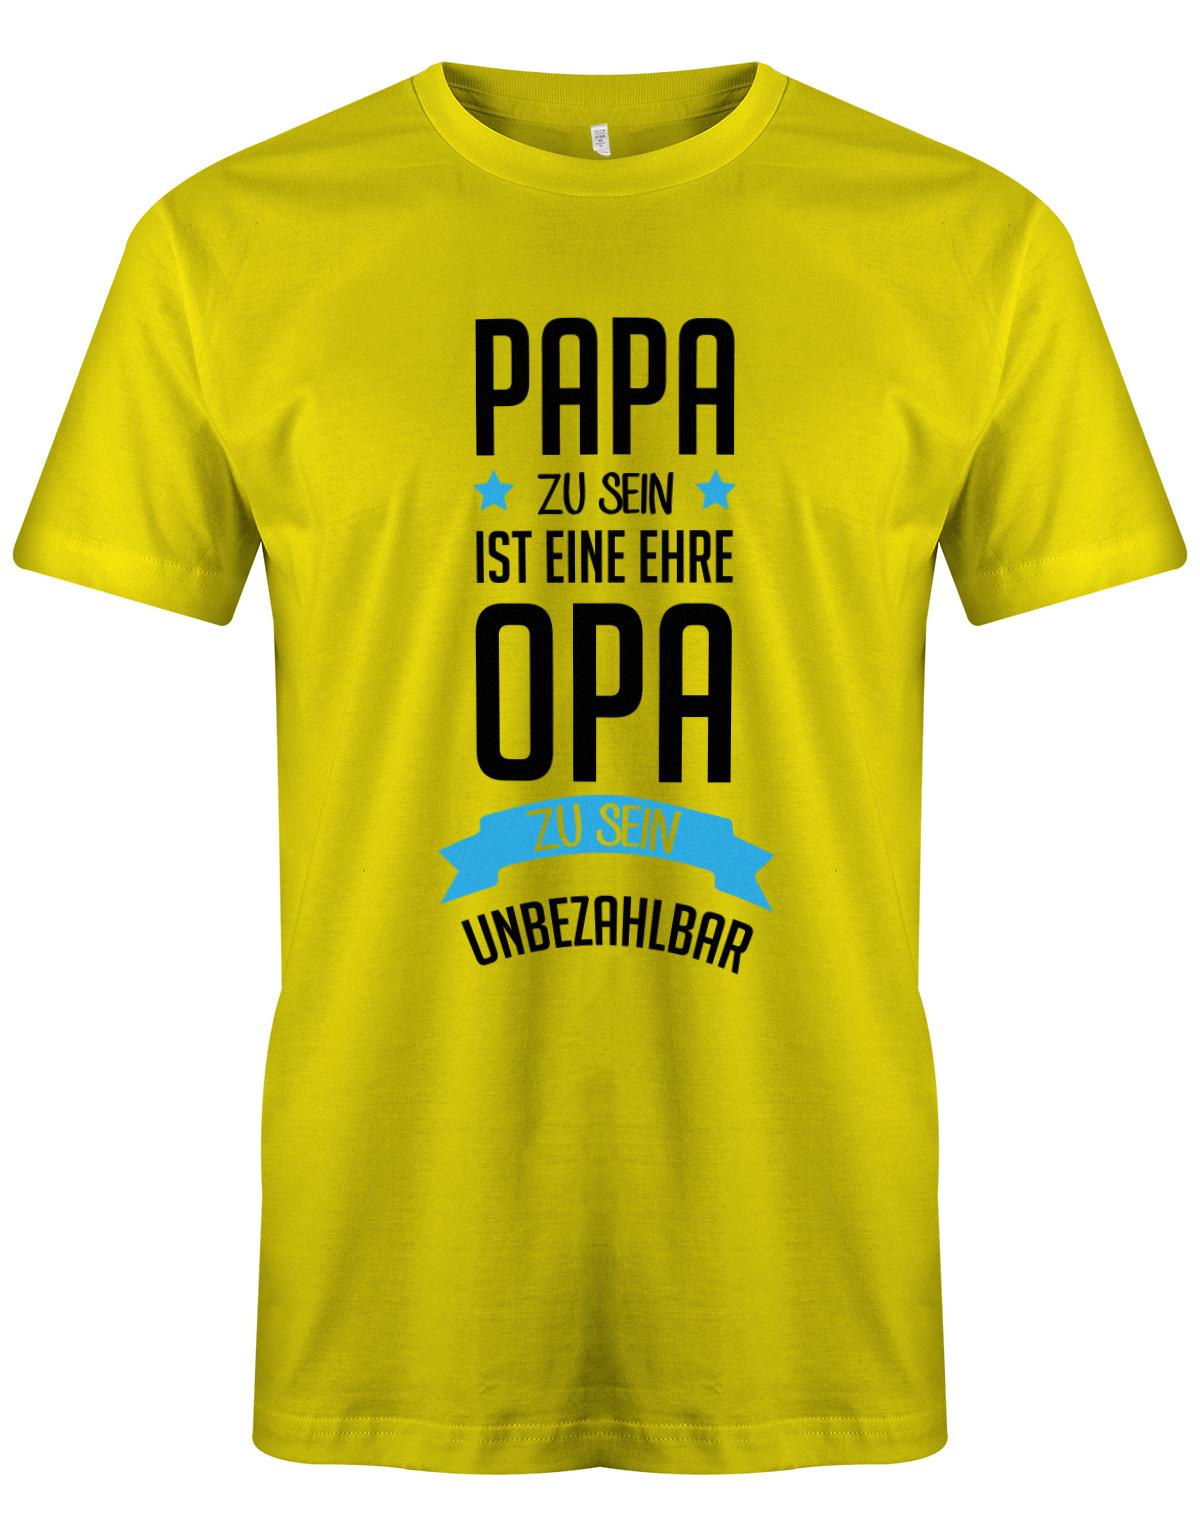 Opa T-Shirt Spruch für den werdenden Opa. Papa zu sein, ist eine Ehre, Opa zu sein unbezahlbar. Gelb